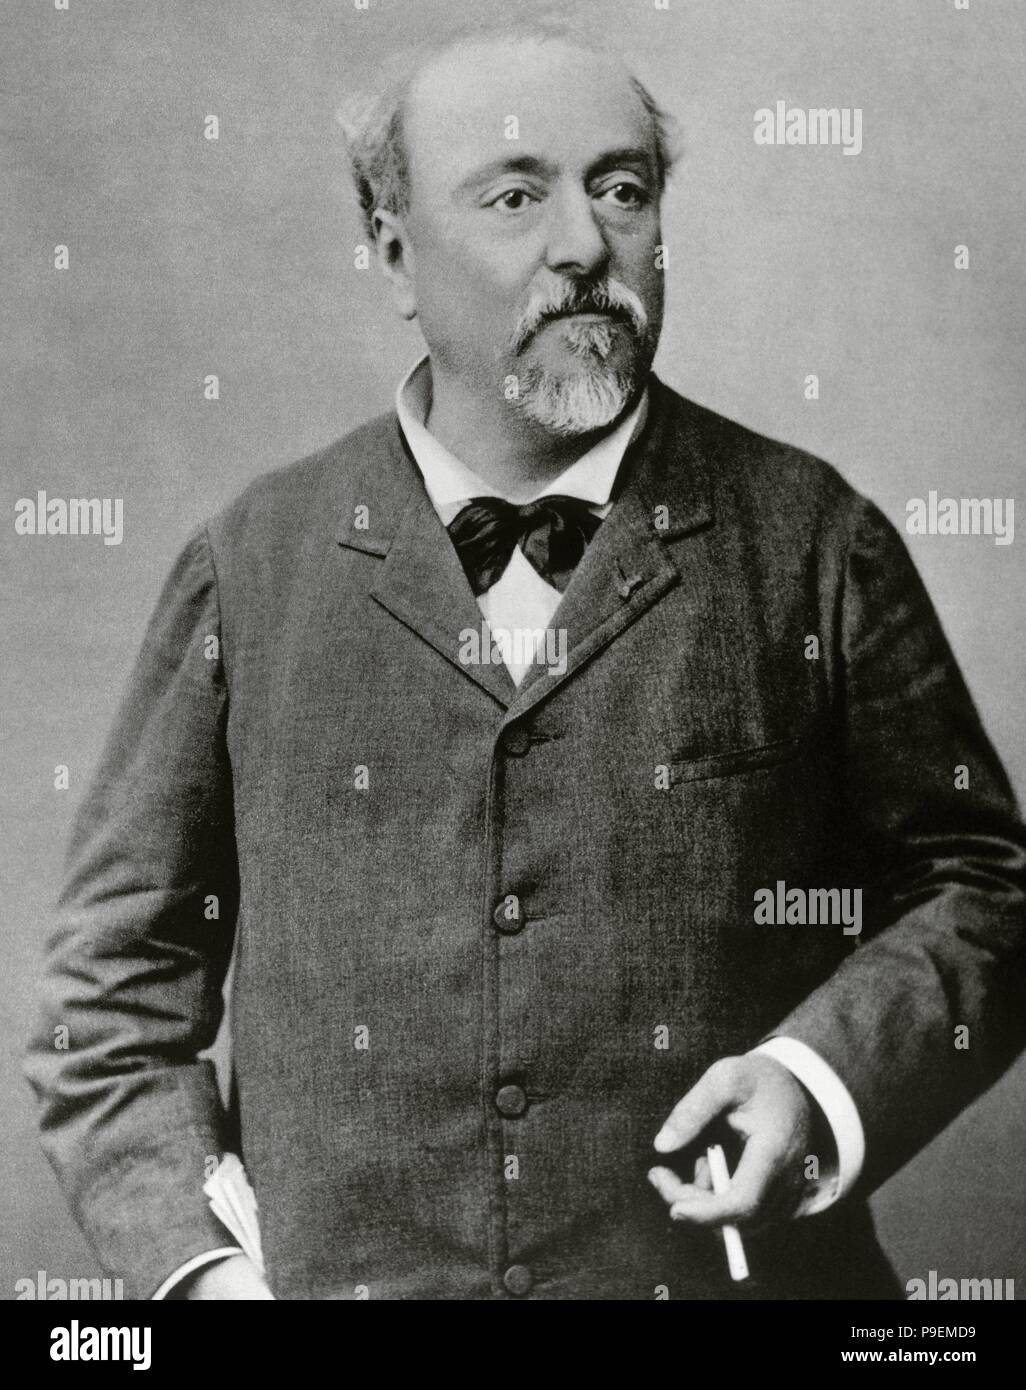 Emmanuel Chabrier (1841-1894). Der französische Komponist. Porträt. Fotografie. Stockfoto